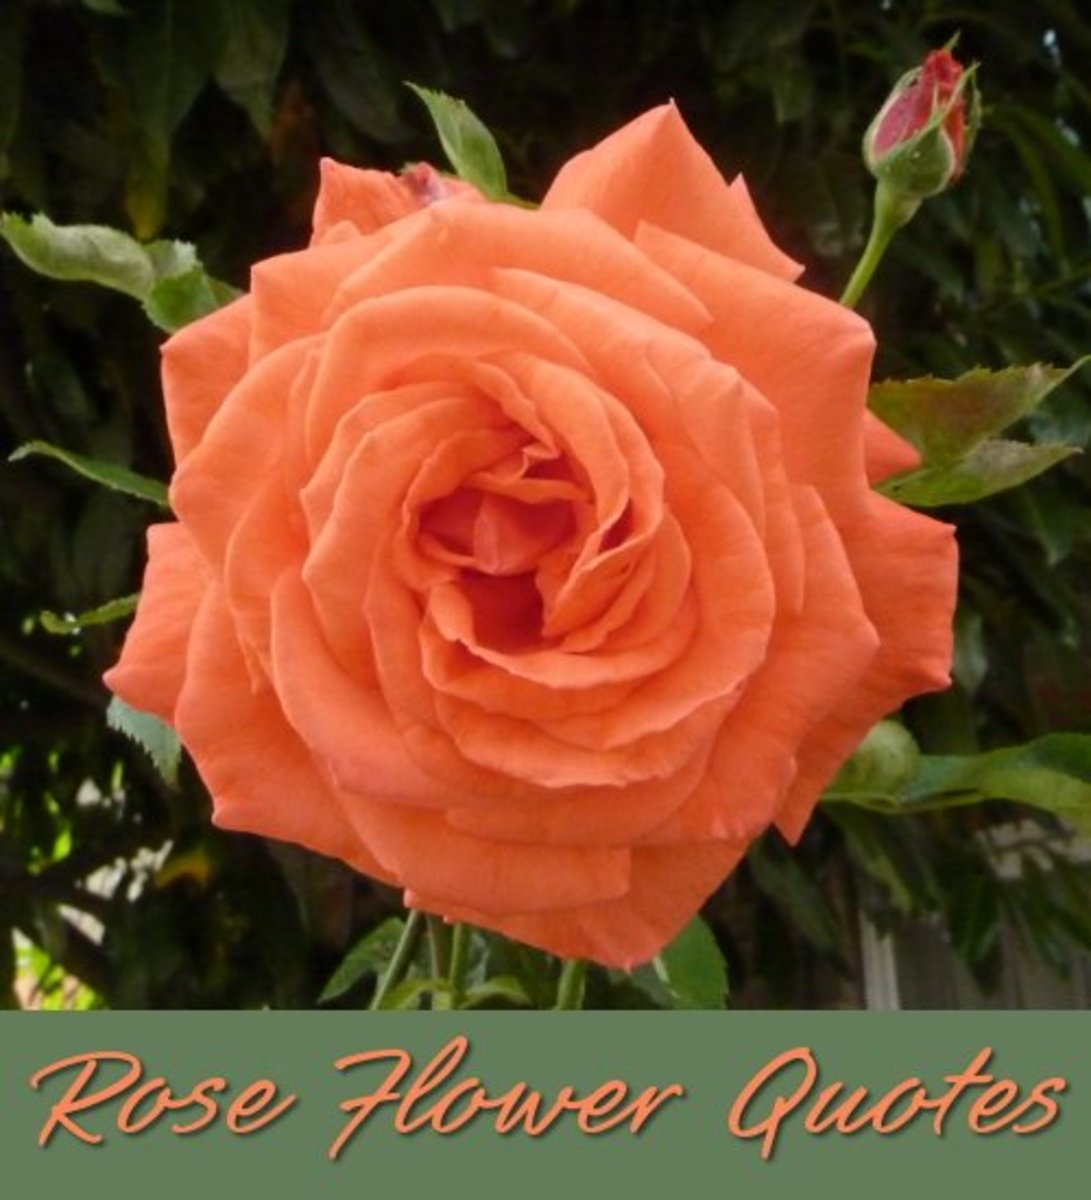 rose quotes